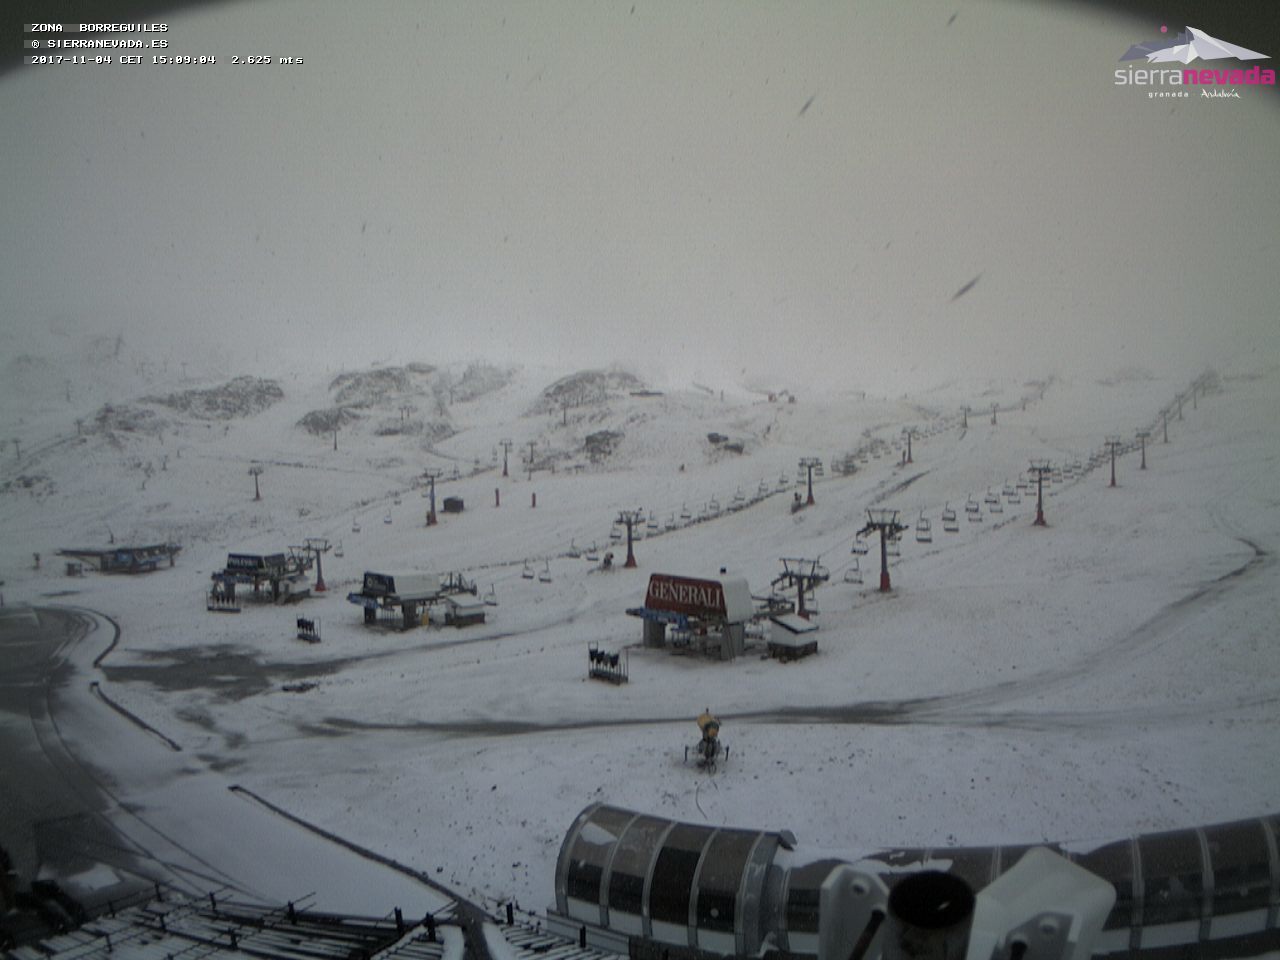 Vuelve a nevar sobre Sierra Nevada - Noticias - Nevasport.com